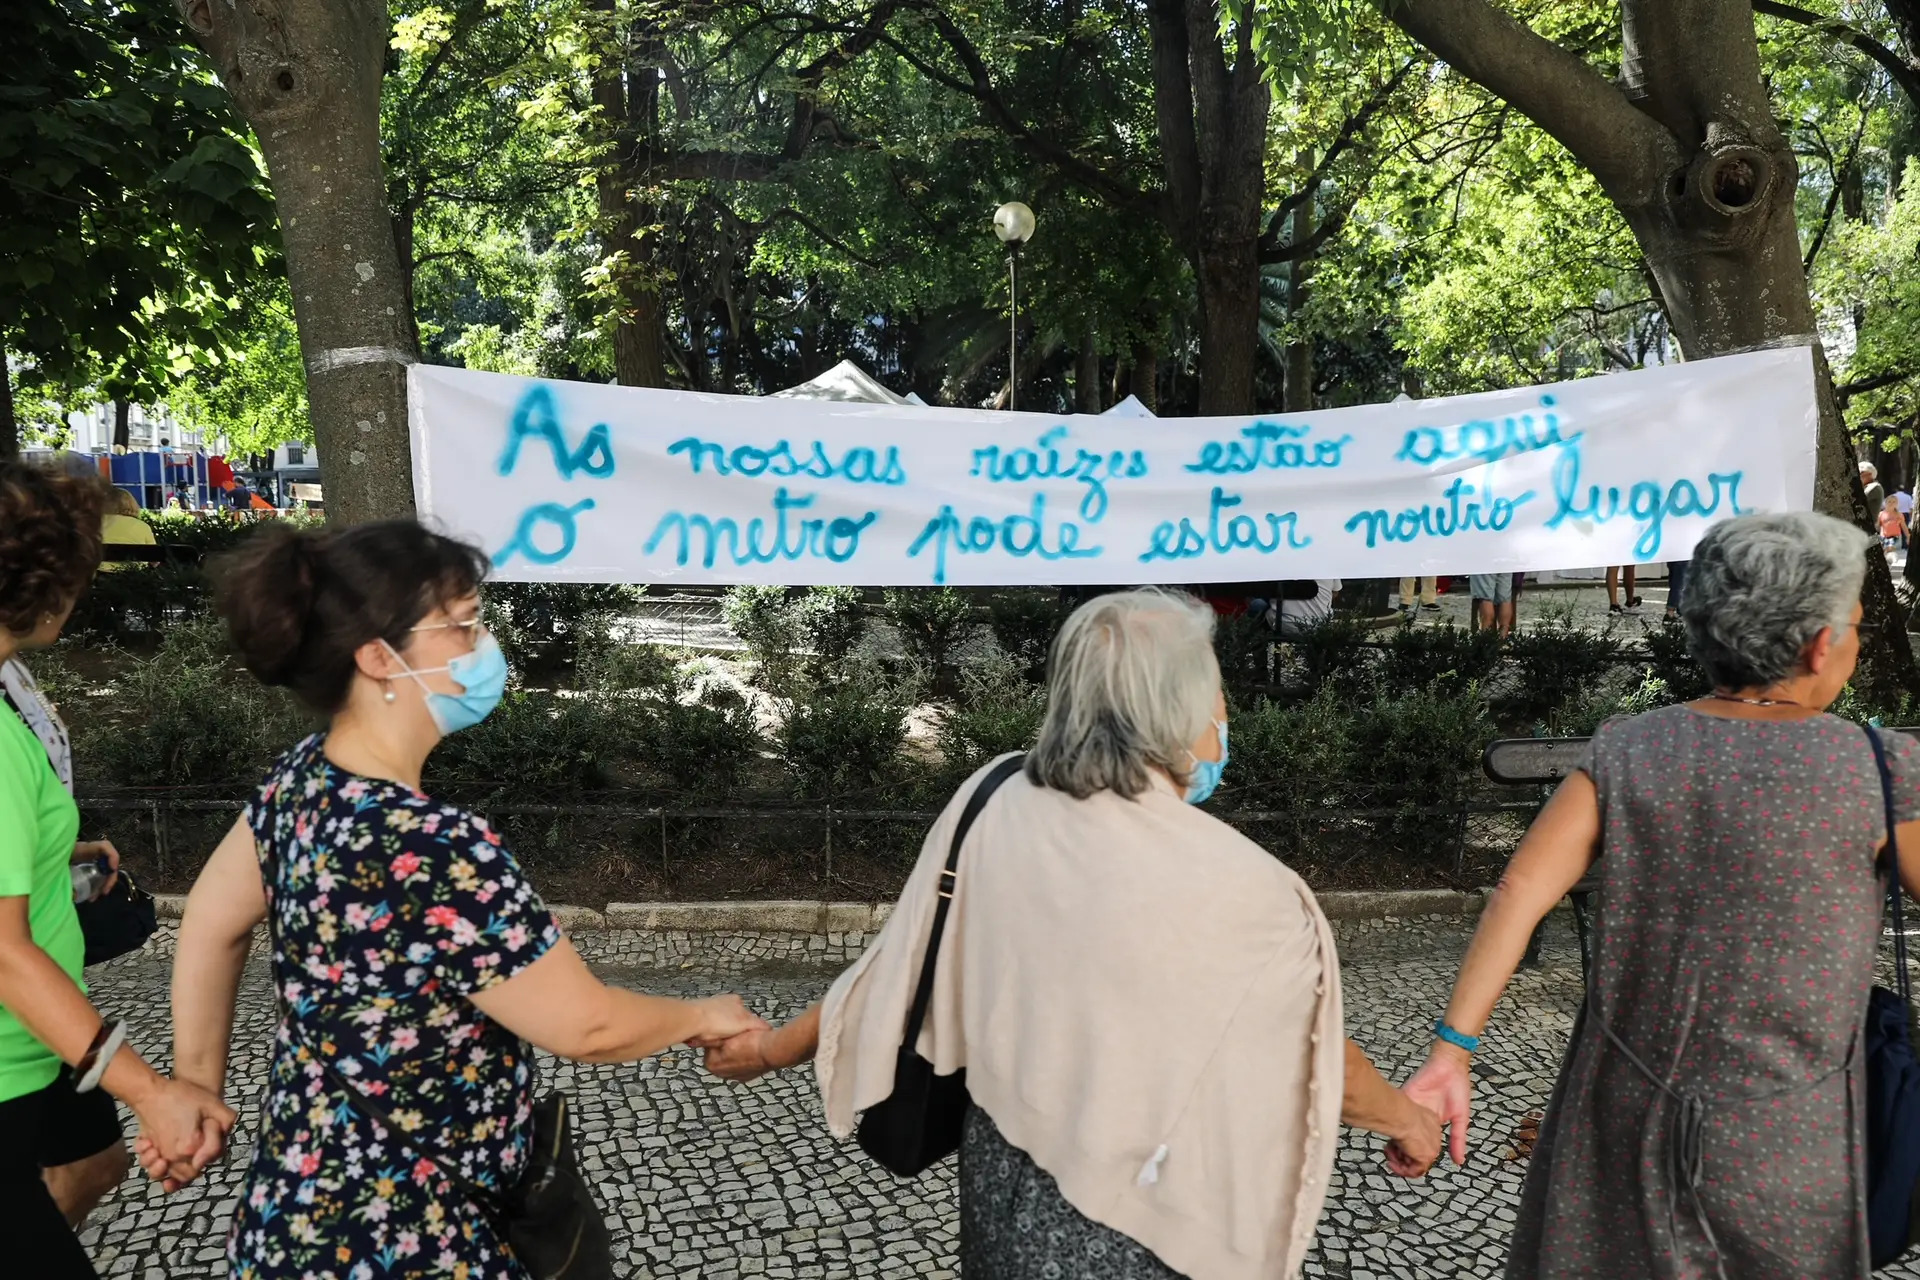 Moradores de Campo de Ourique contra as obras do Metro no Jardim da Parada: "É a nossa sala de visitas. Não pode ser fechada"